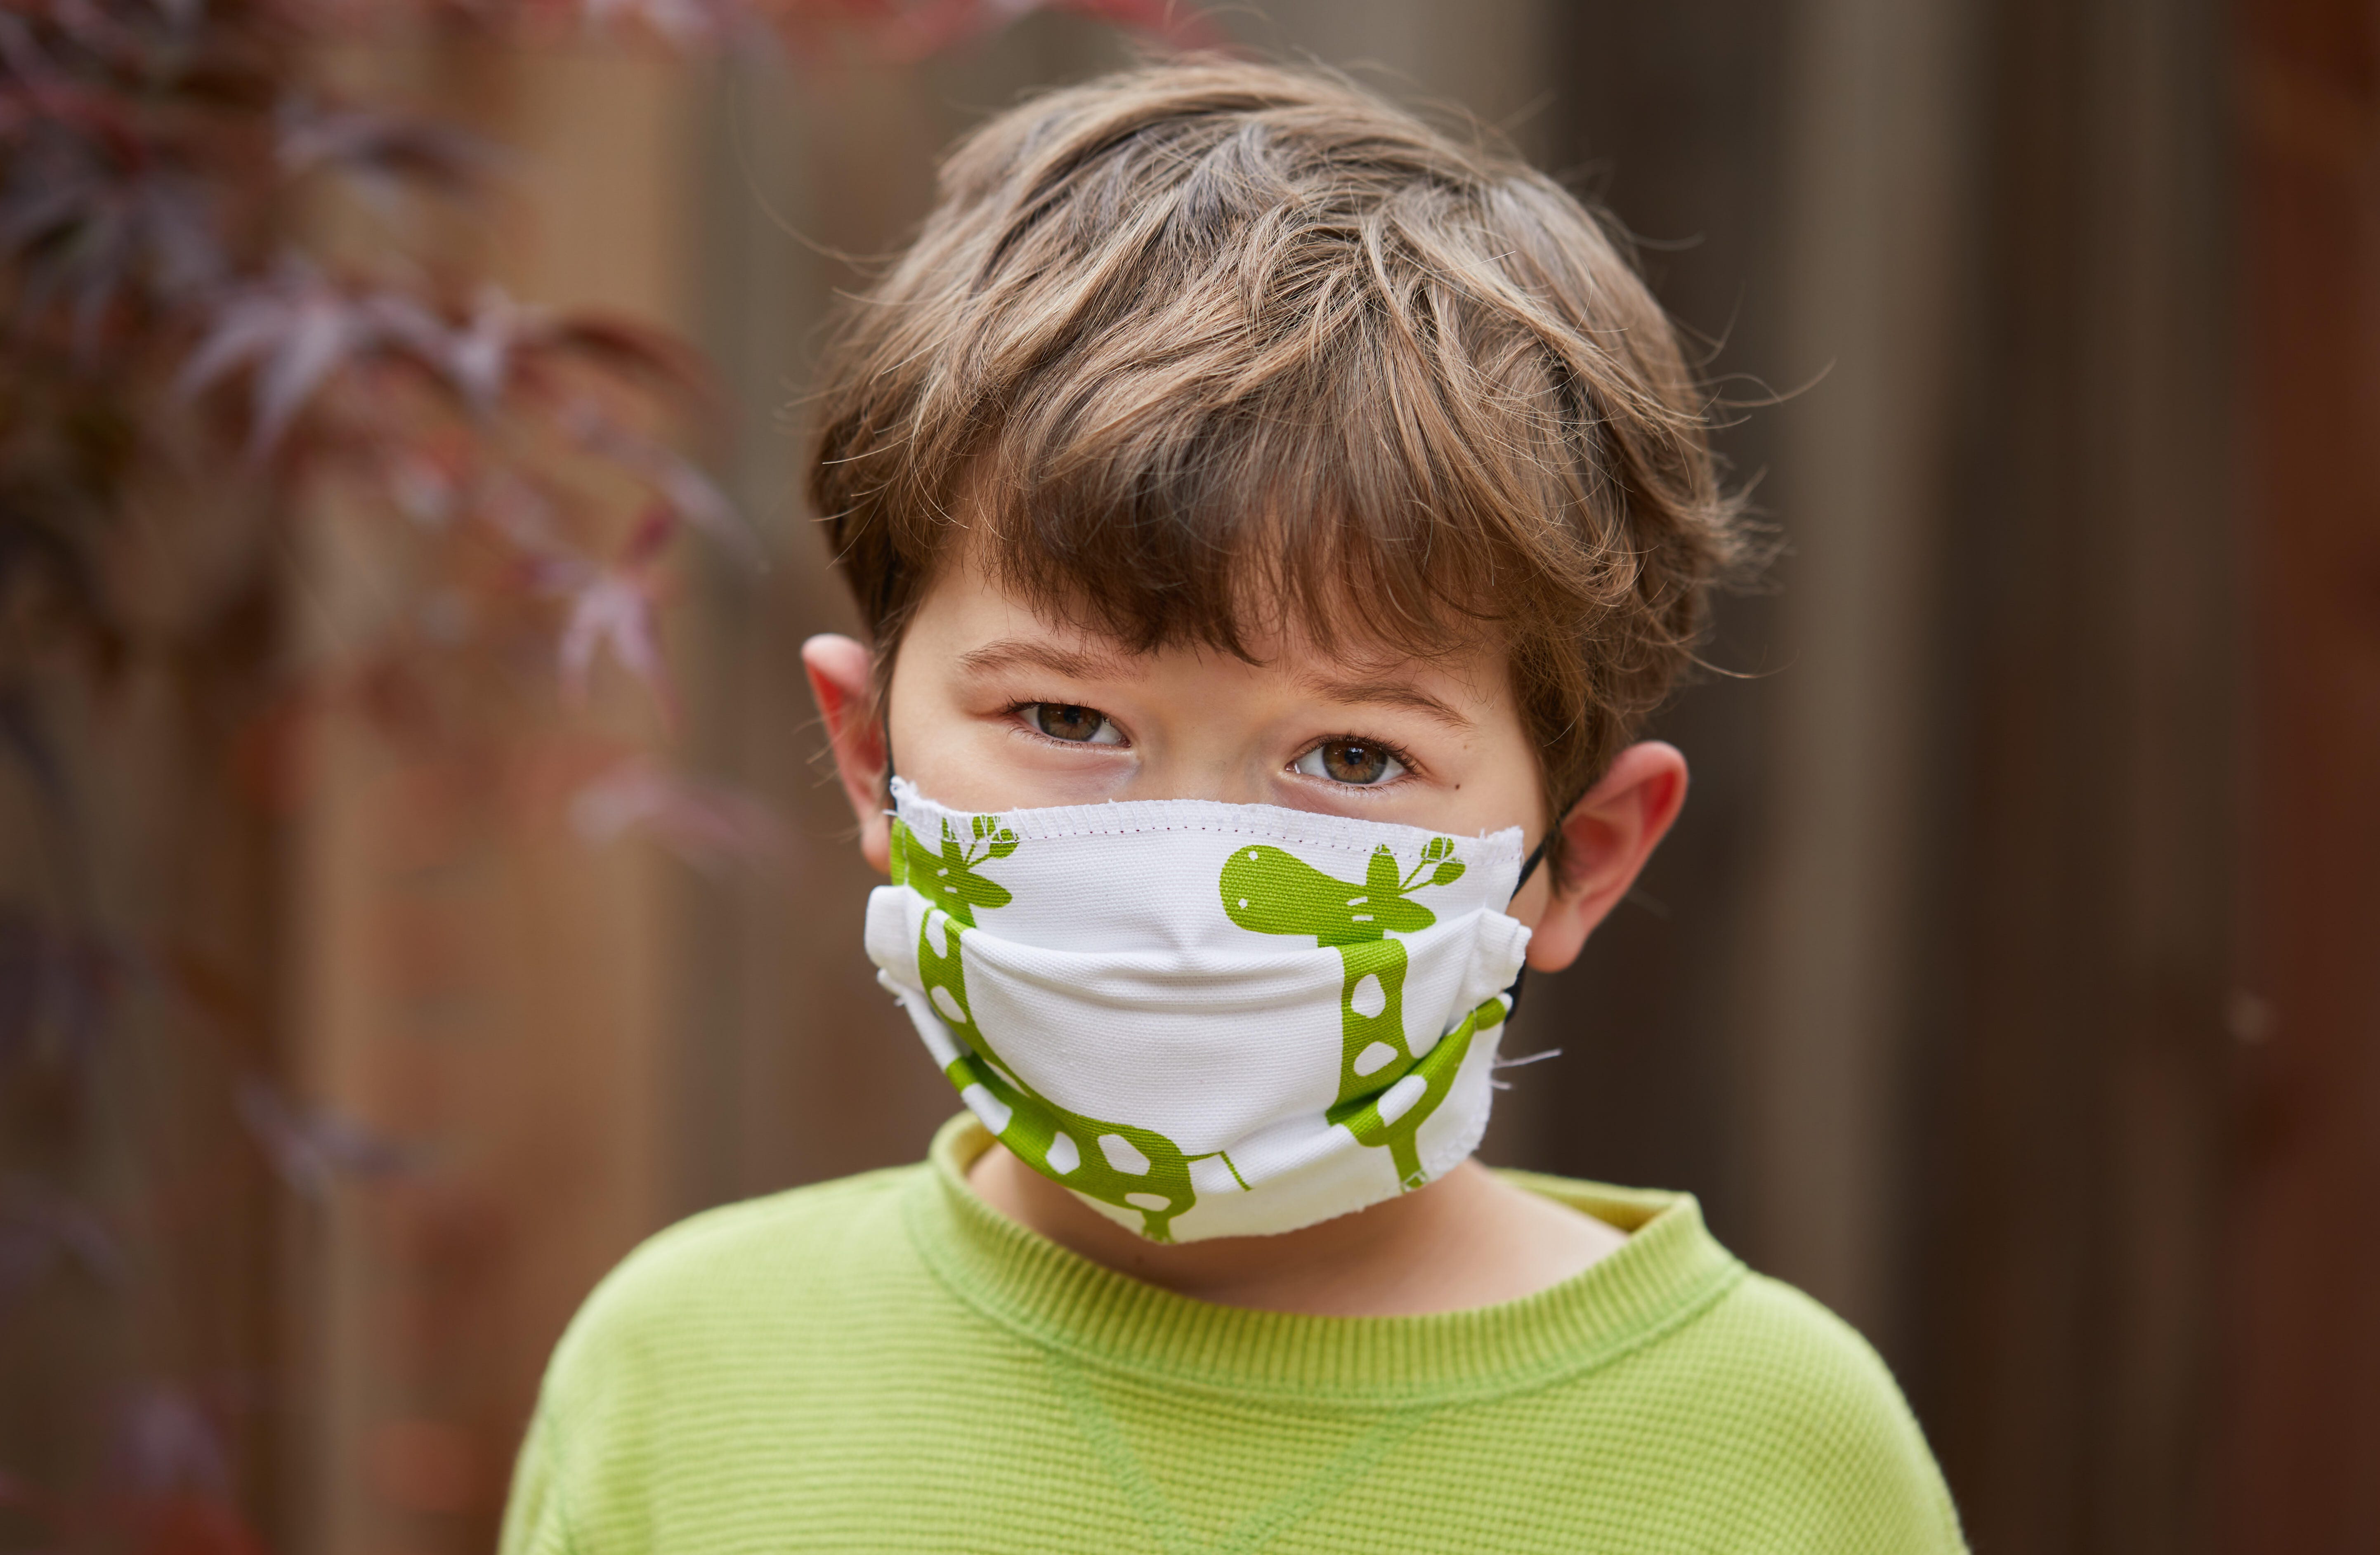 Một cậu bé đeo mặt nạ thủ công để cố gắng giảm lây truyền COVID-19, căn bệnh do coronavirus gây ra.